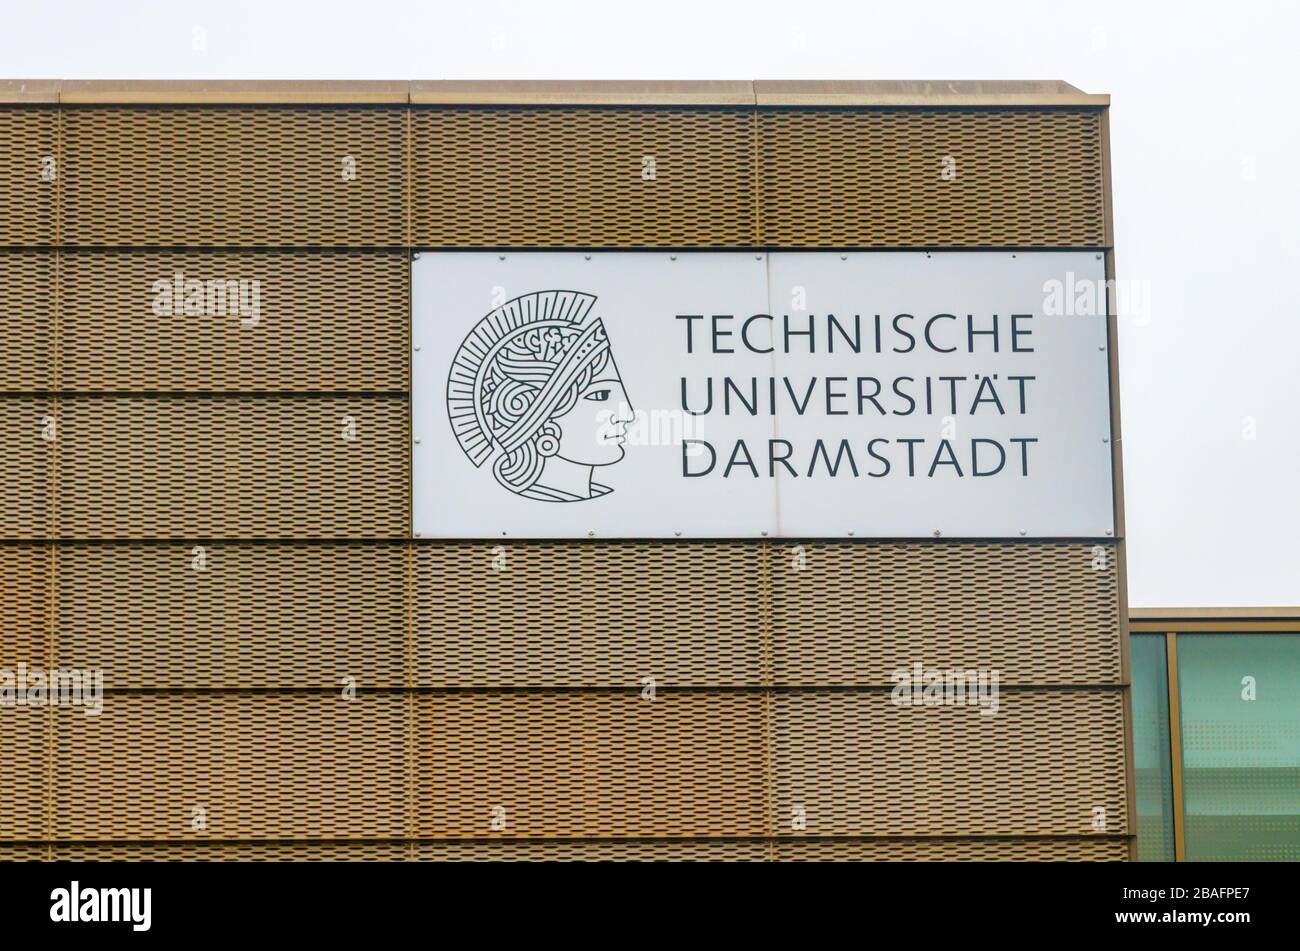 Edificio universitario con el logotipo de la Technische Universität Darmstadt (Universidad de Tecnología). Darmstadt, Alemania. Foto de stock